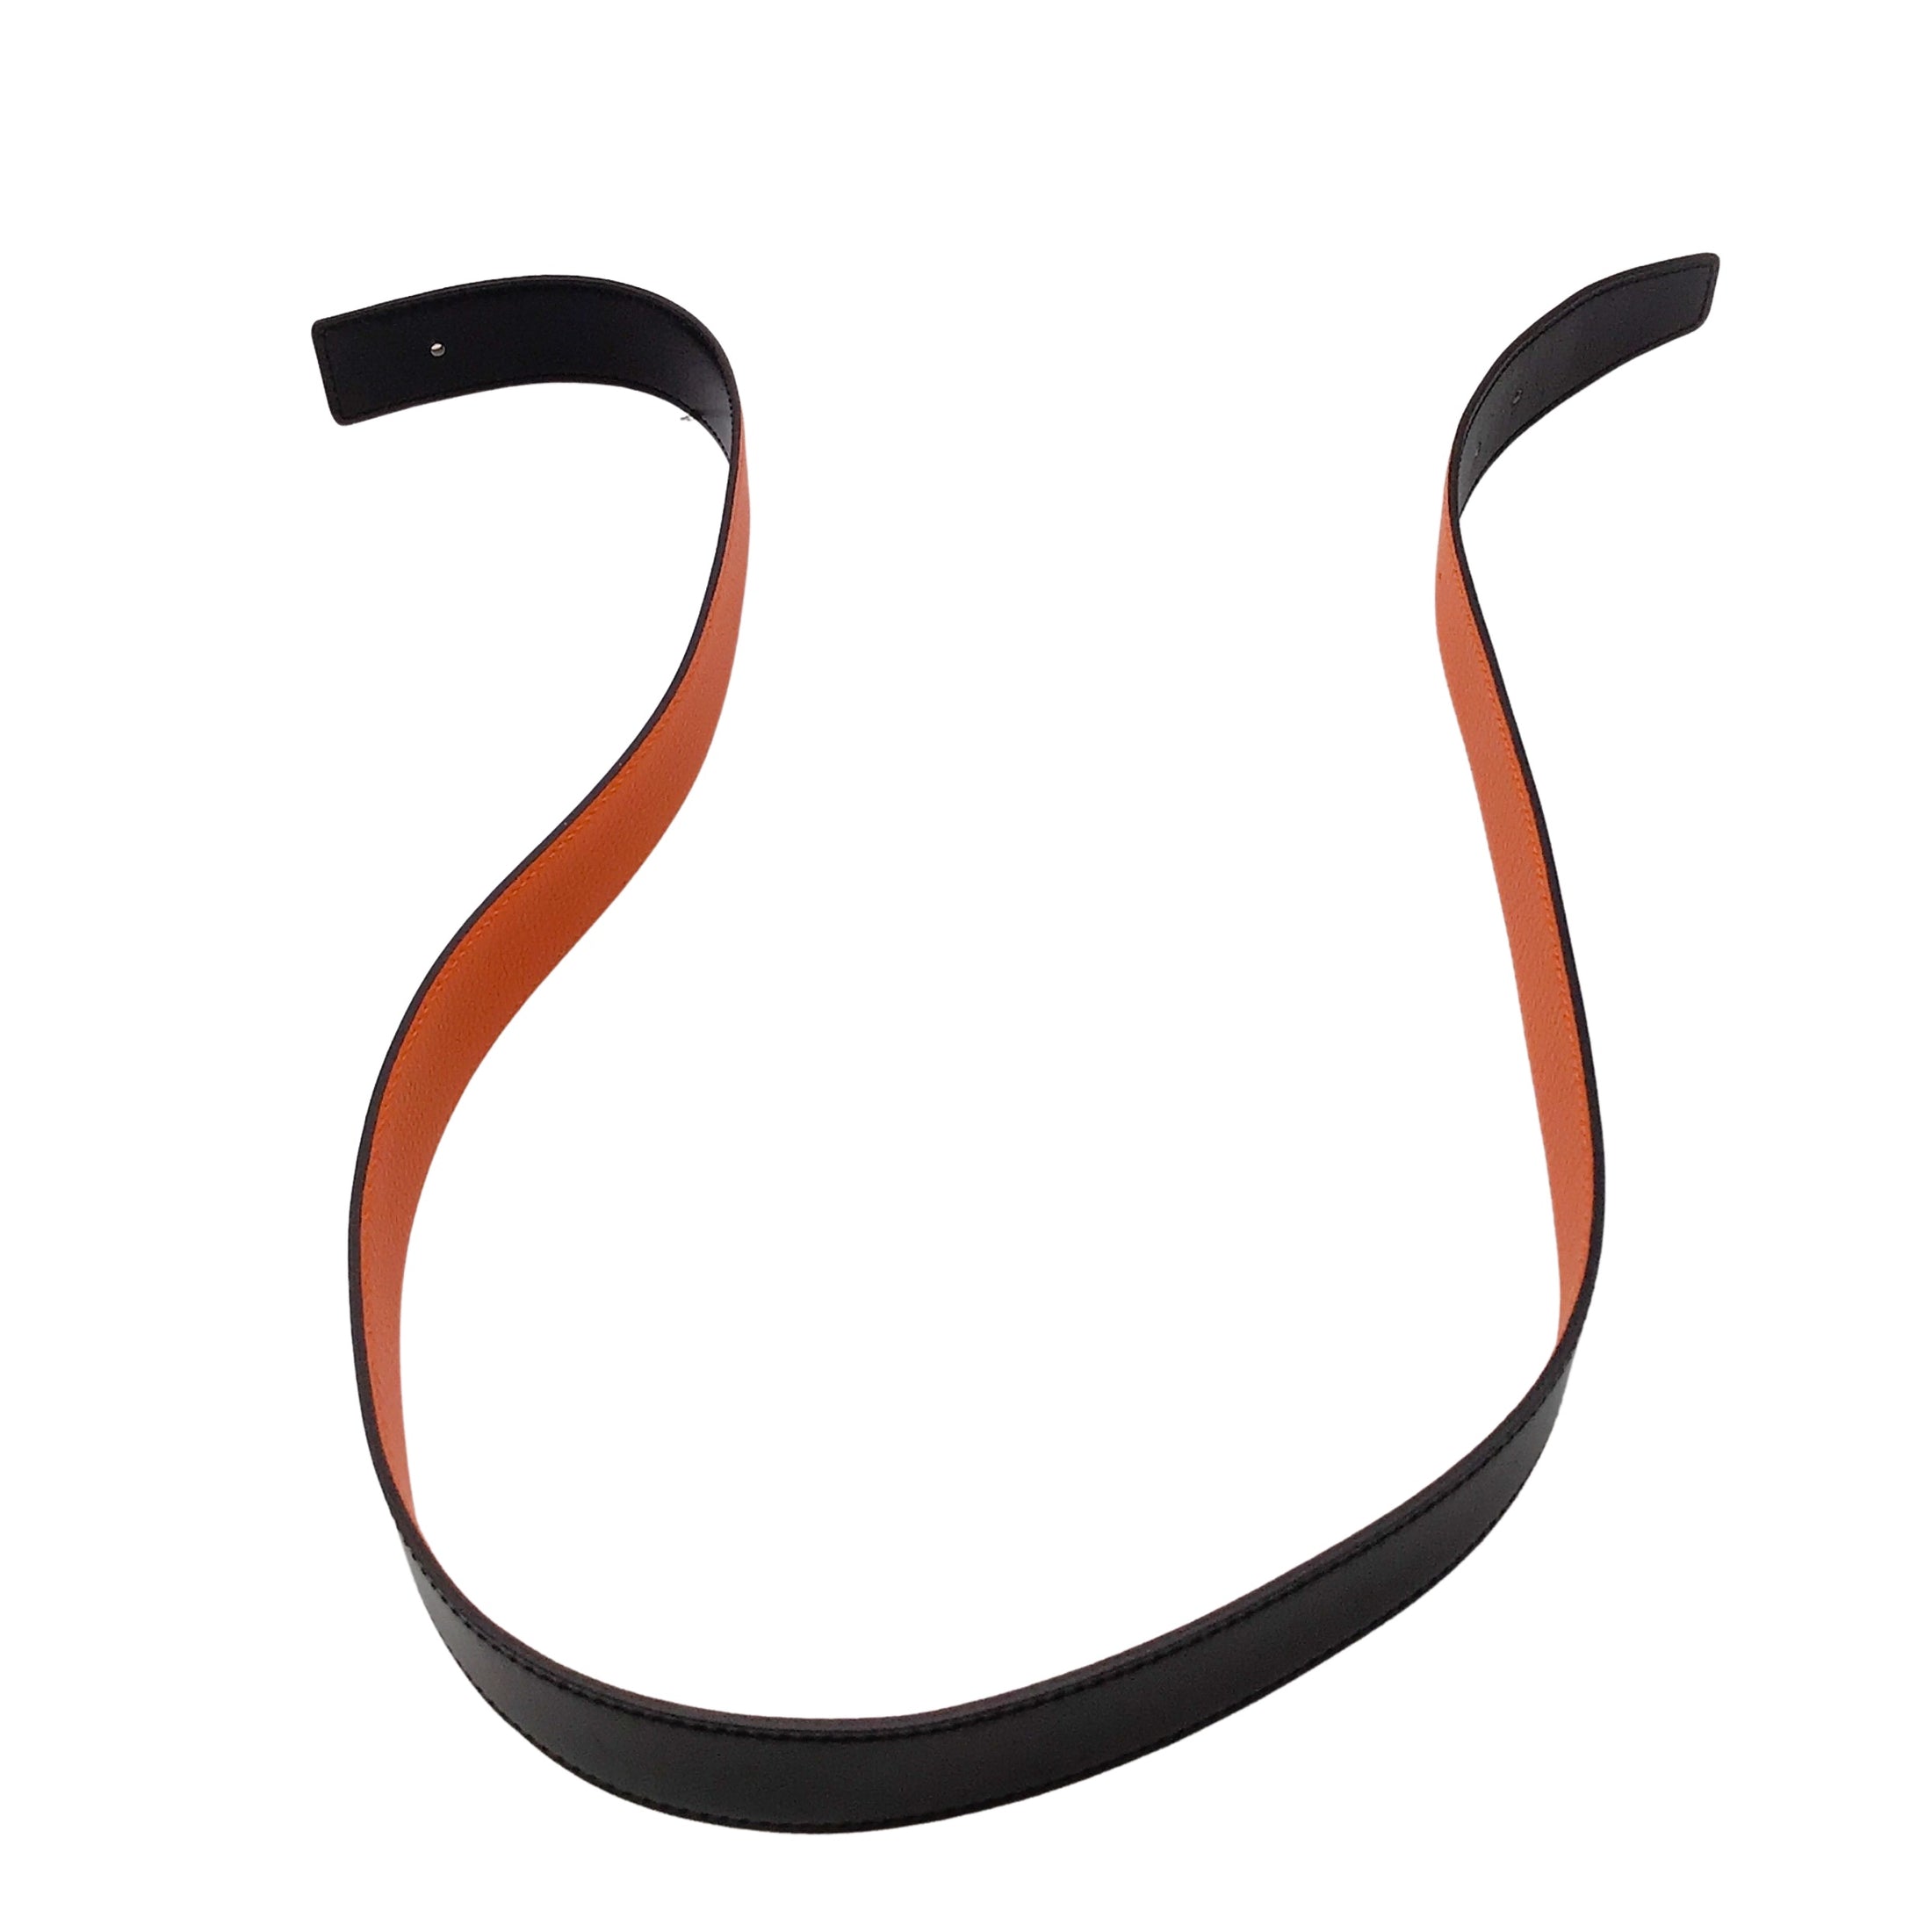 Hermes Orange / Black 2012 Reversible 32mm Leather Belt Strap